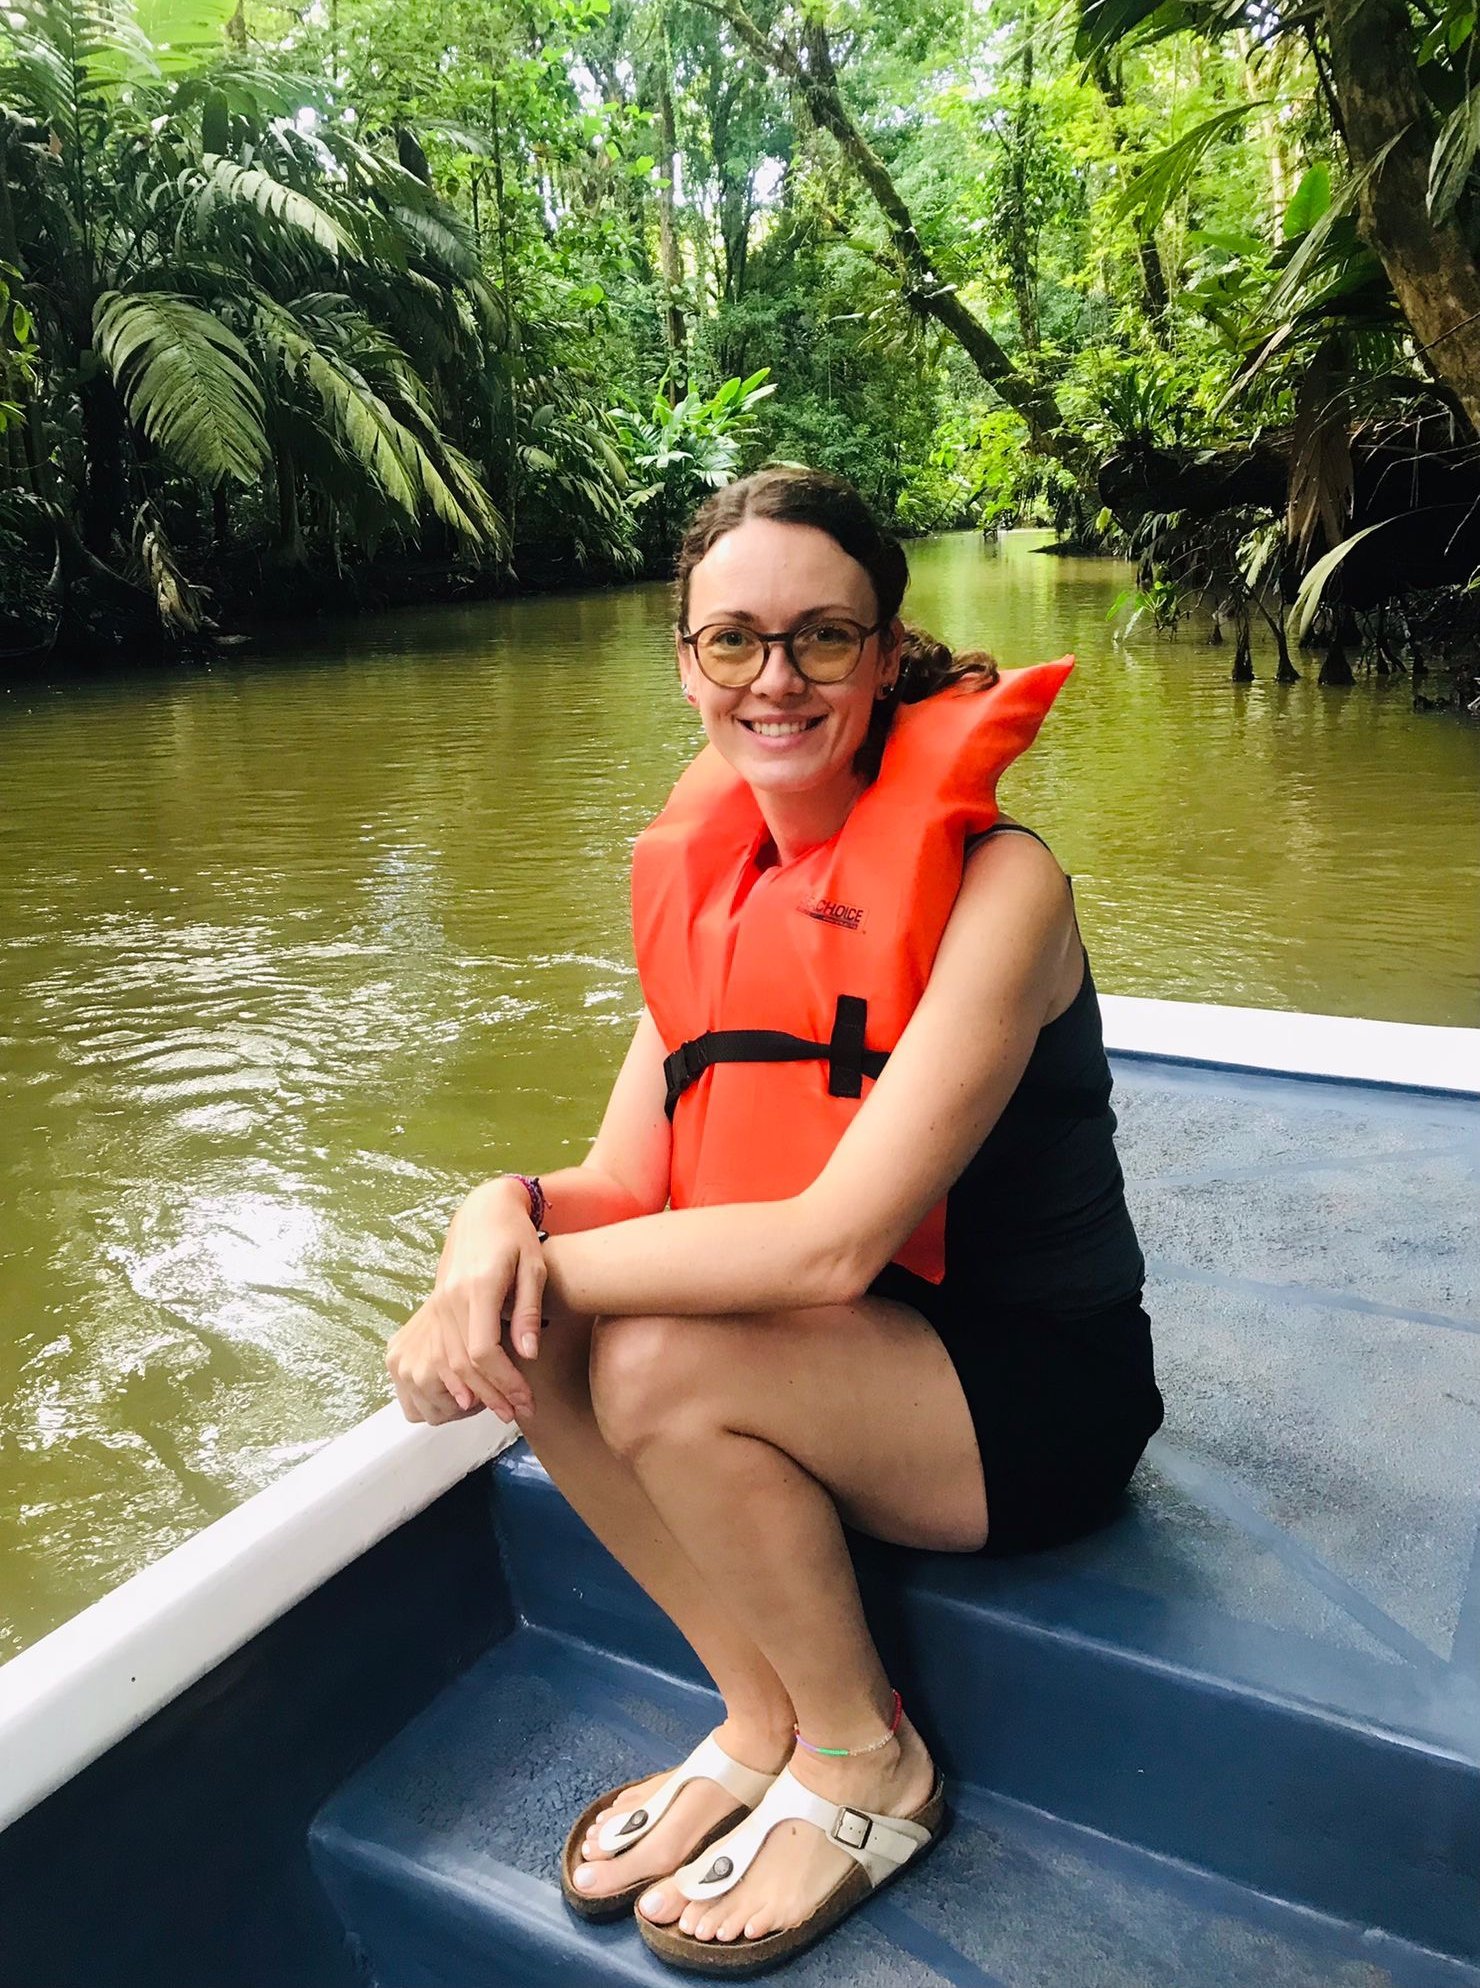 Fernreiseziele mit Kindern im Sommer - Tipps für Fernreisen im Sommer mit Kindern - Bootstour durch den Regenwald